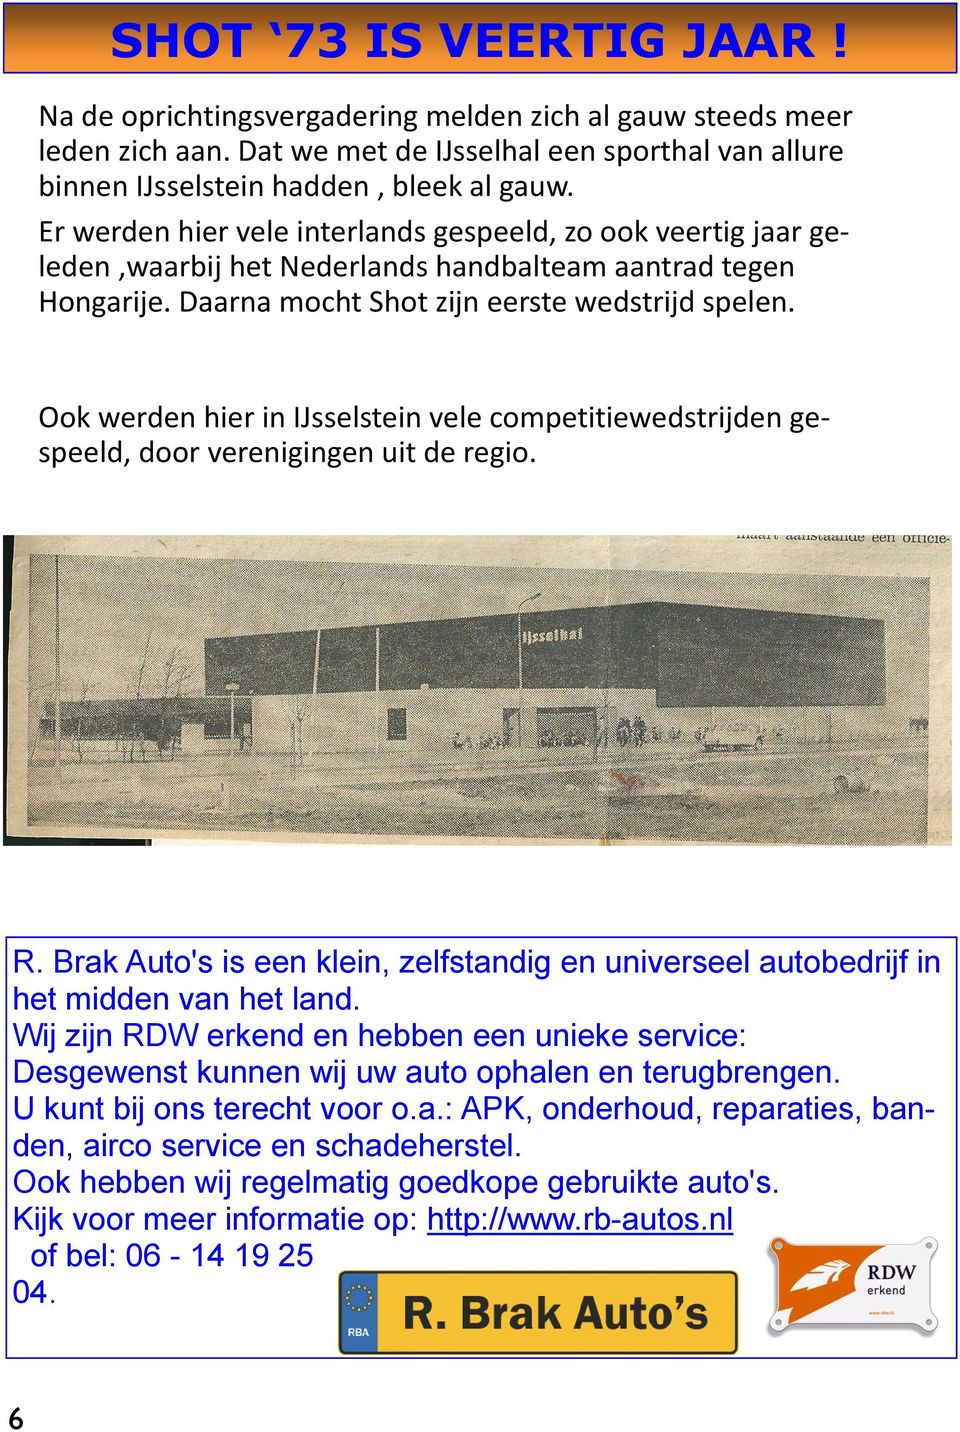 Ook werden hier in IJsselstein vele competitiewedstrijden gespeeld, door verenigingen uit de regio. R. Brak Auto's is een klein, zelfstandig en universeel autobedrijf in het midden van het land.